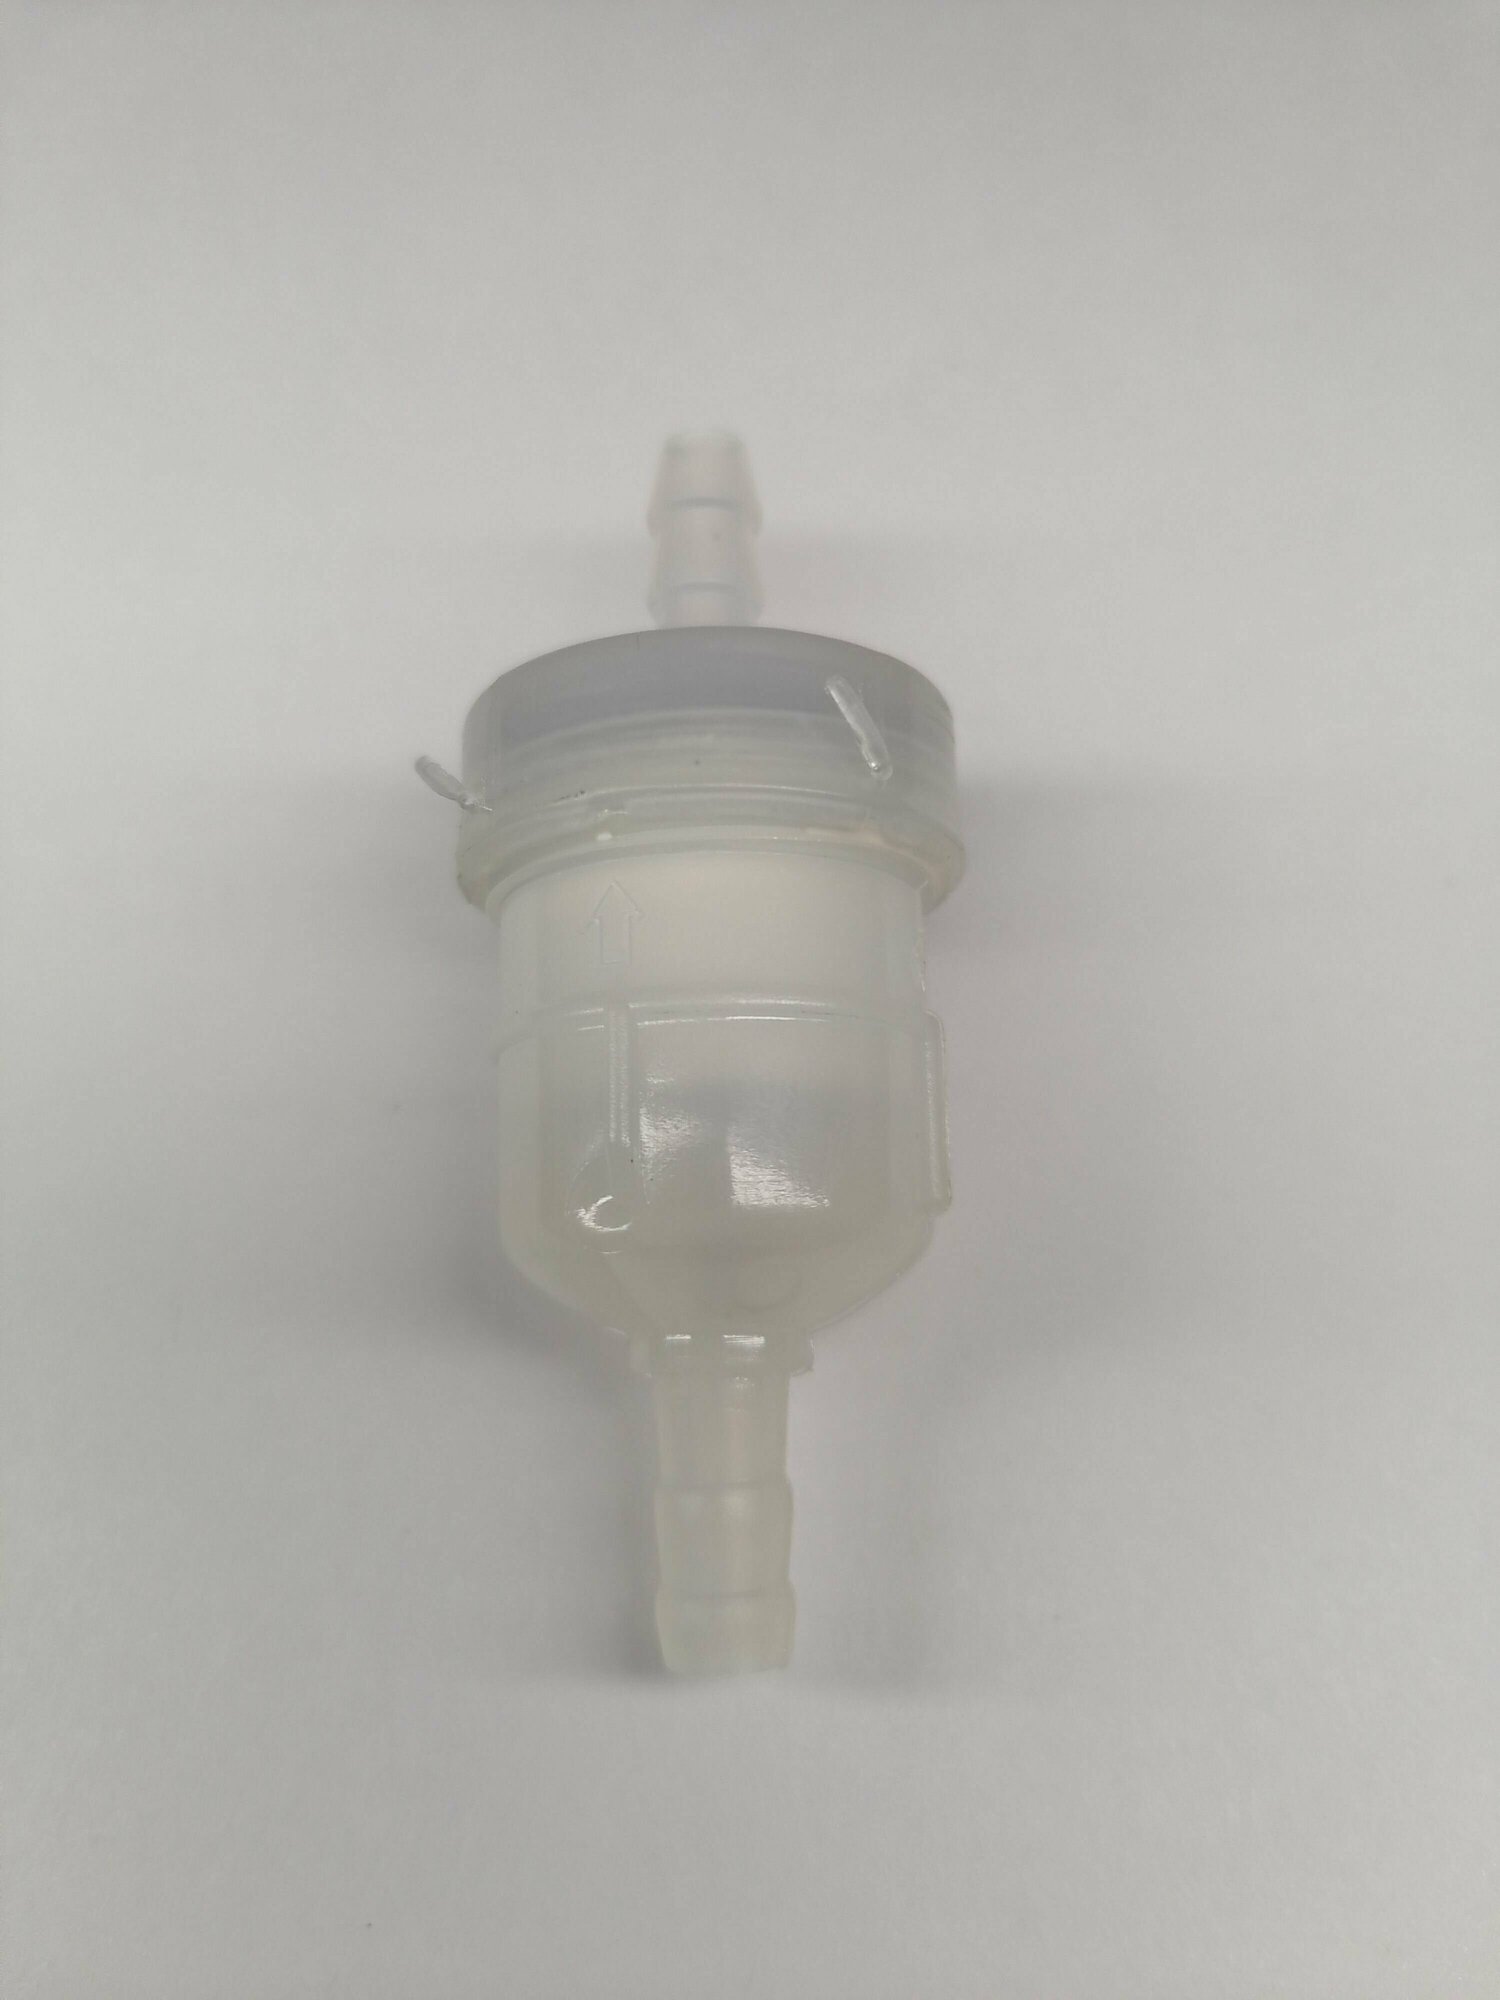 Фильтр топливный проходной / F4-05000300